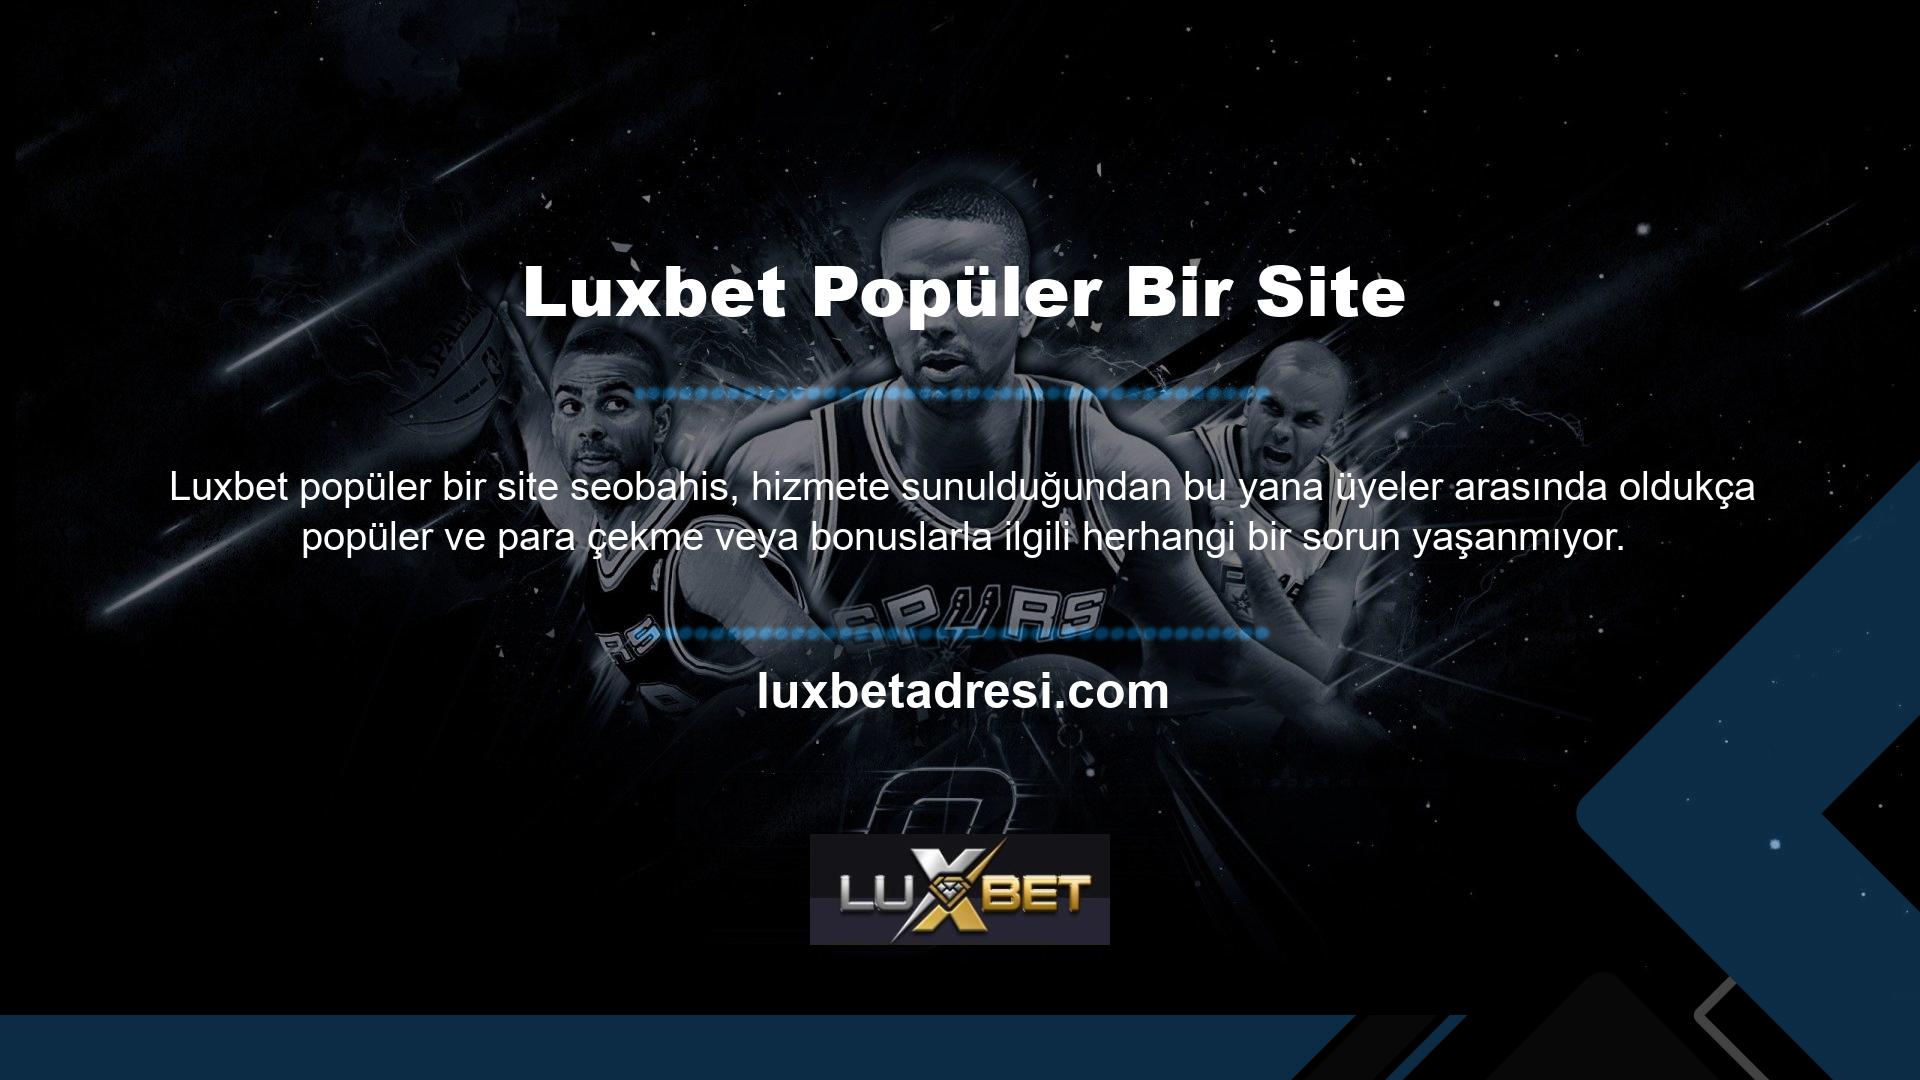 Luxbet güvenle bahis yapabilirsiniz